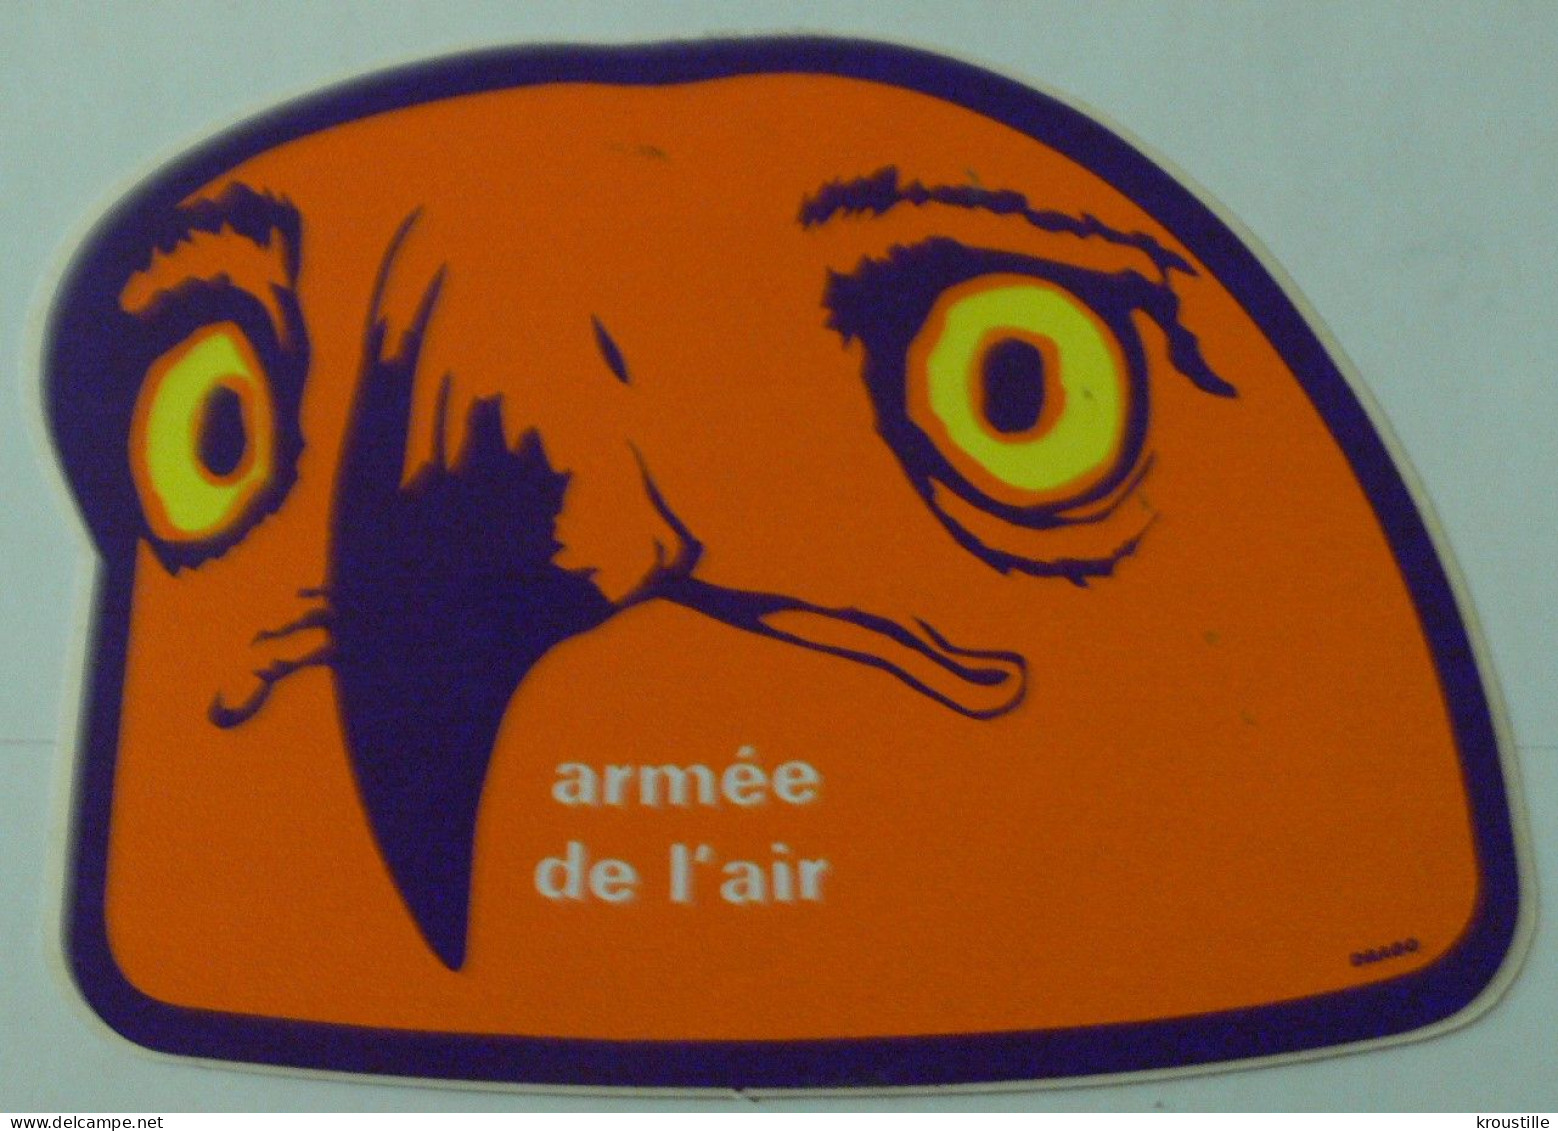 AUTOCOLLANT ARMEE DE L'AIR - THEME AIGLE - Stickers